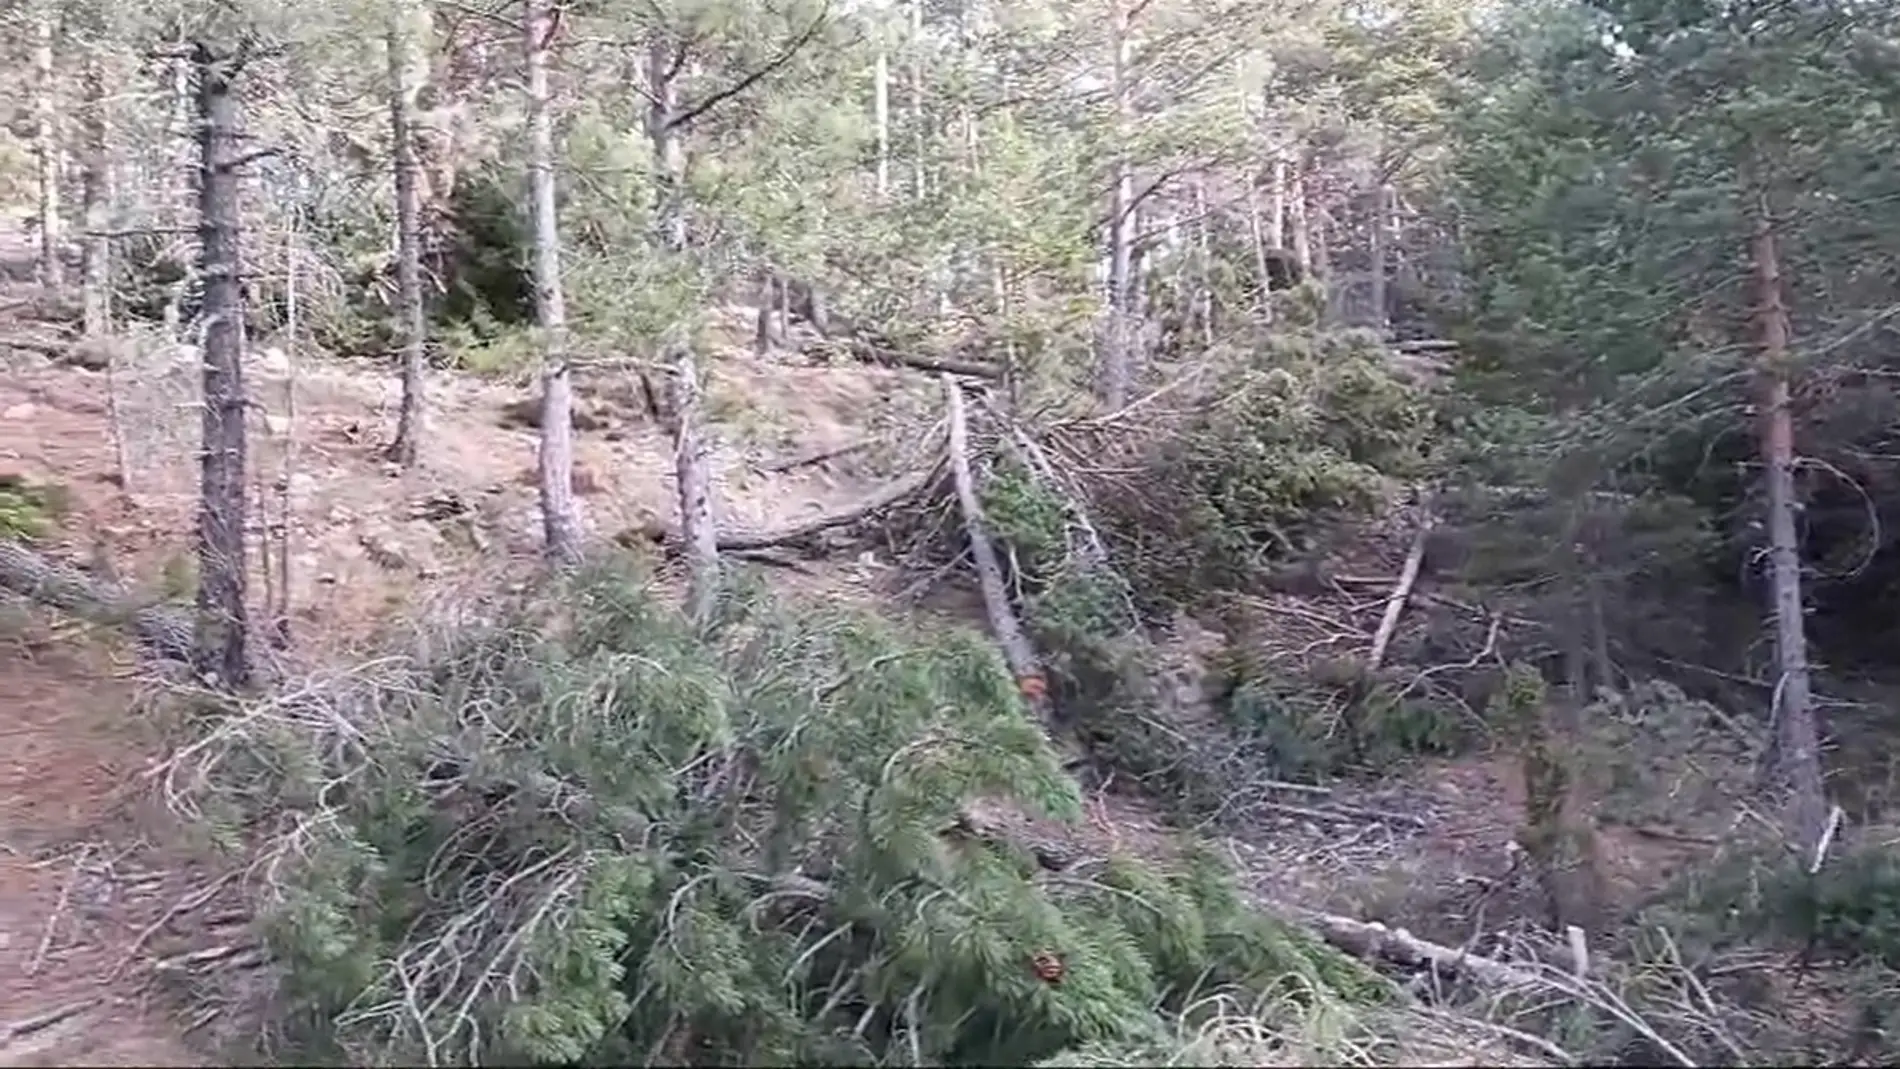 Acció Ecologista-Agró denuncia talas de pinos con "grave impacto" en el parque natural del Penyagolosa